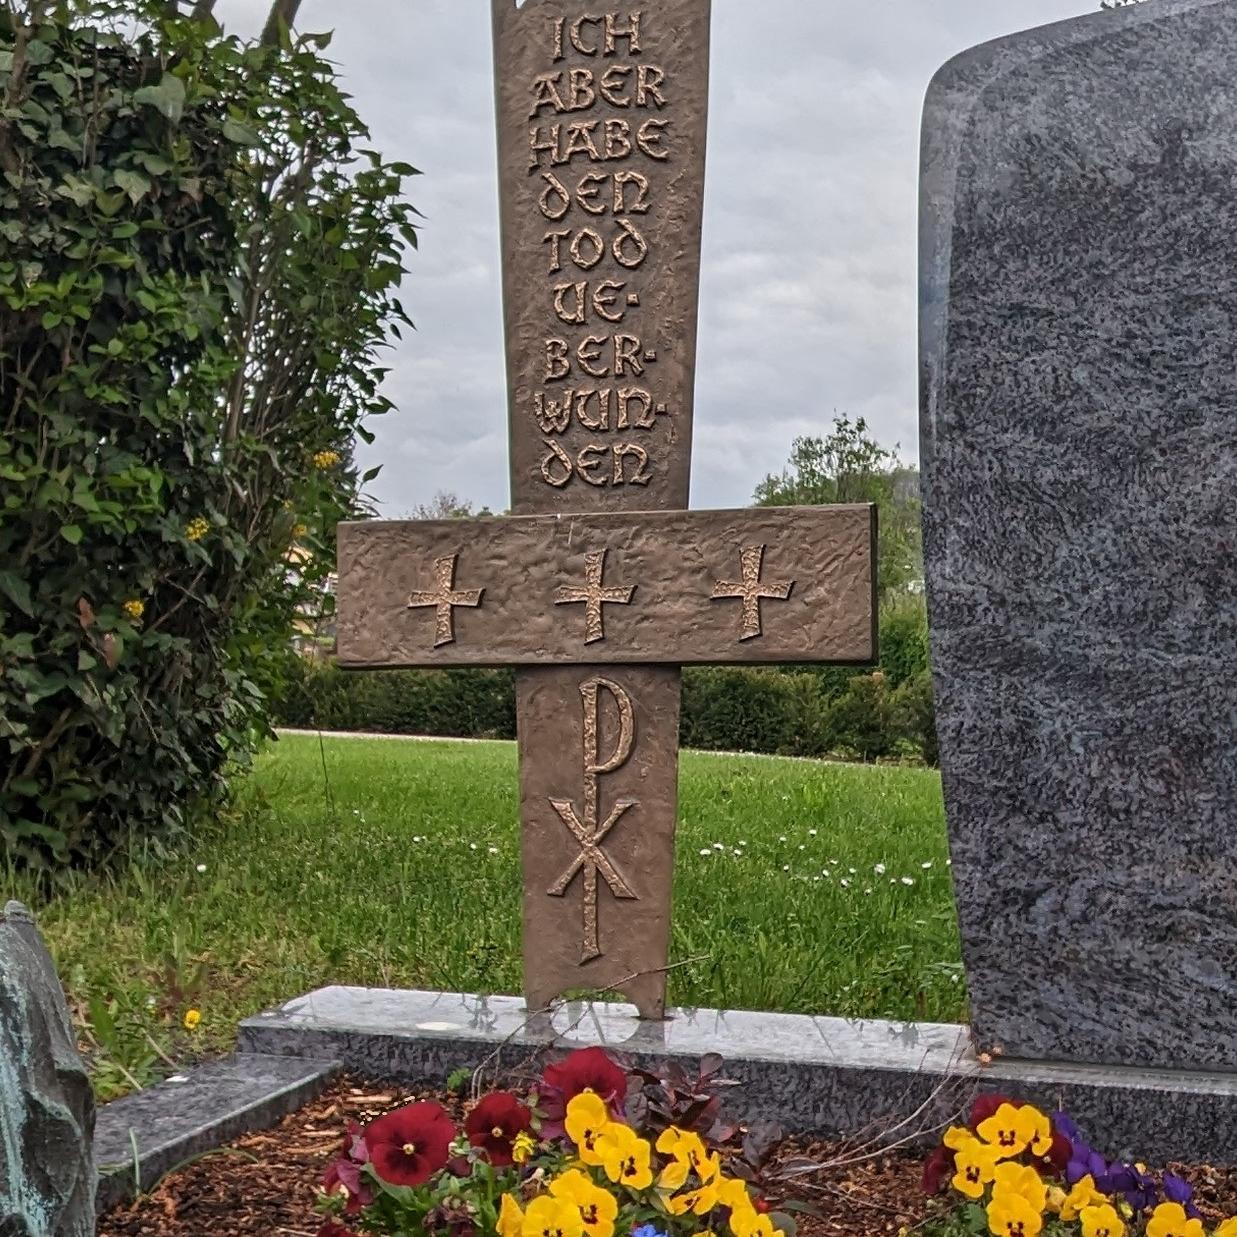 Kreuz-Inschrift: 'Ich aber habe den Tod überwunden', bunte Stiefmütterchen